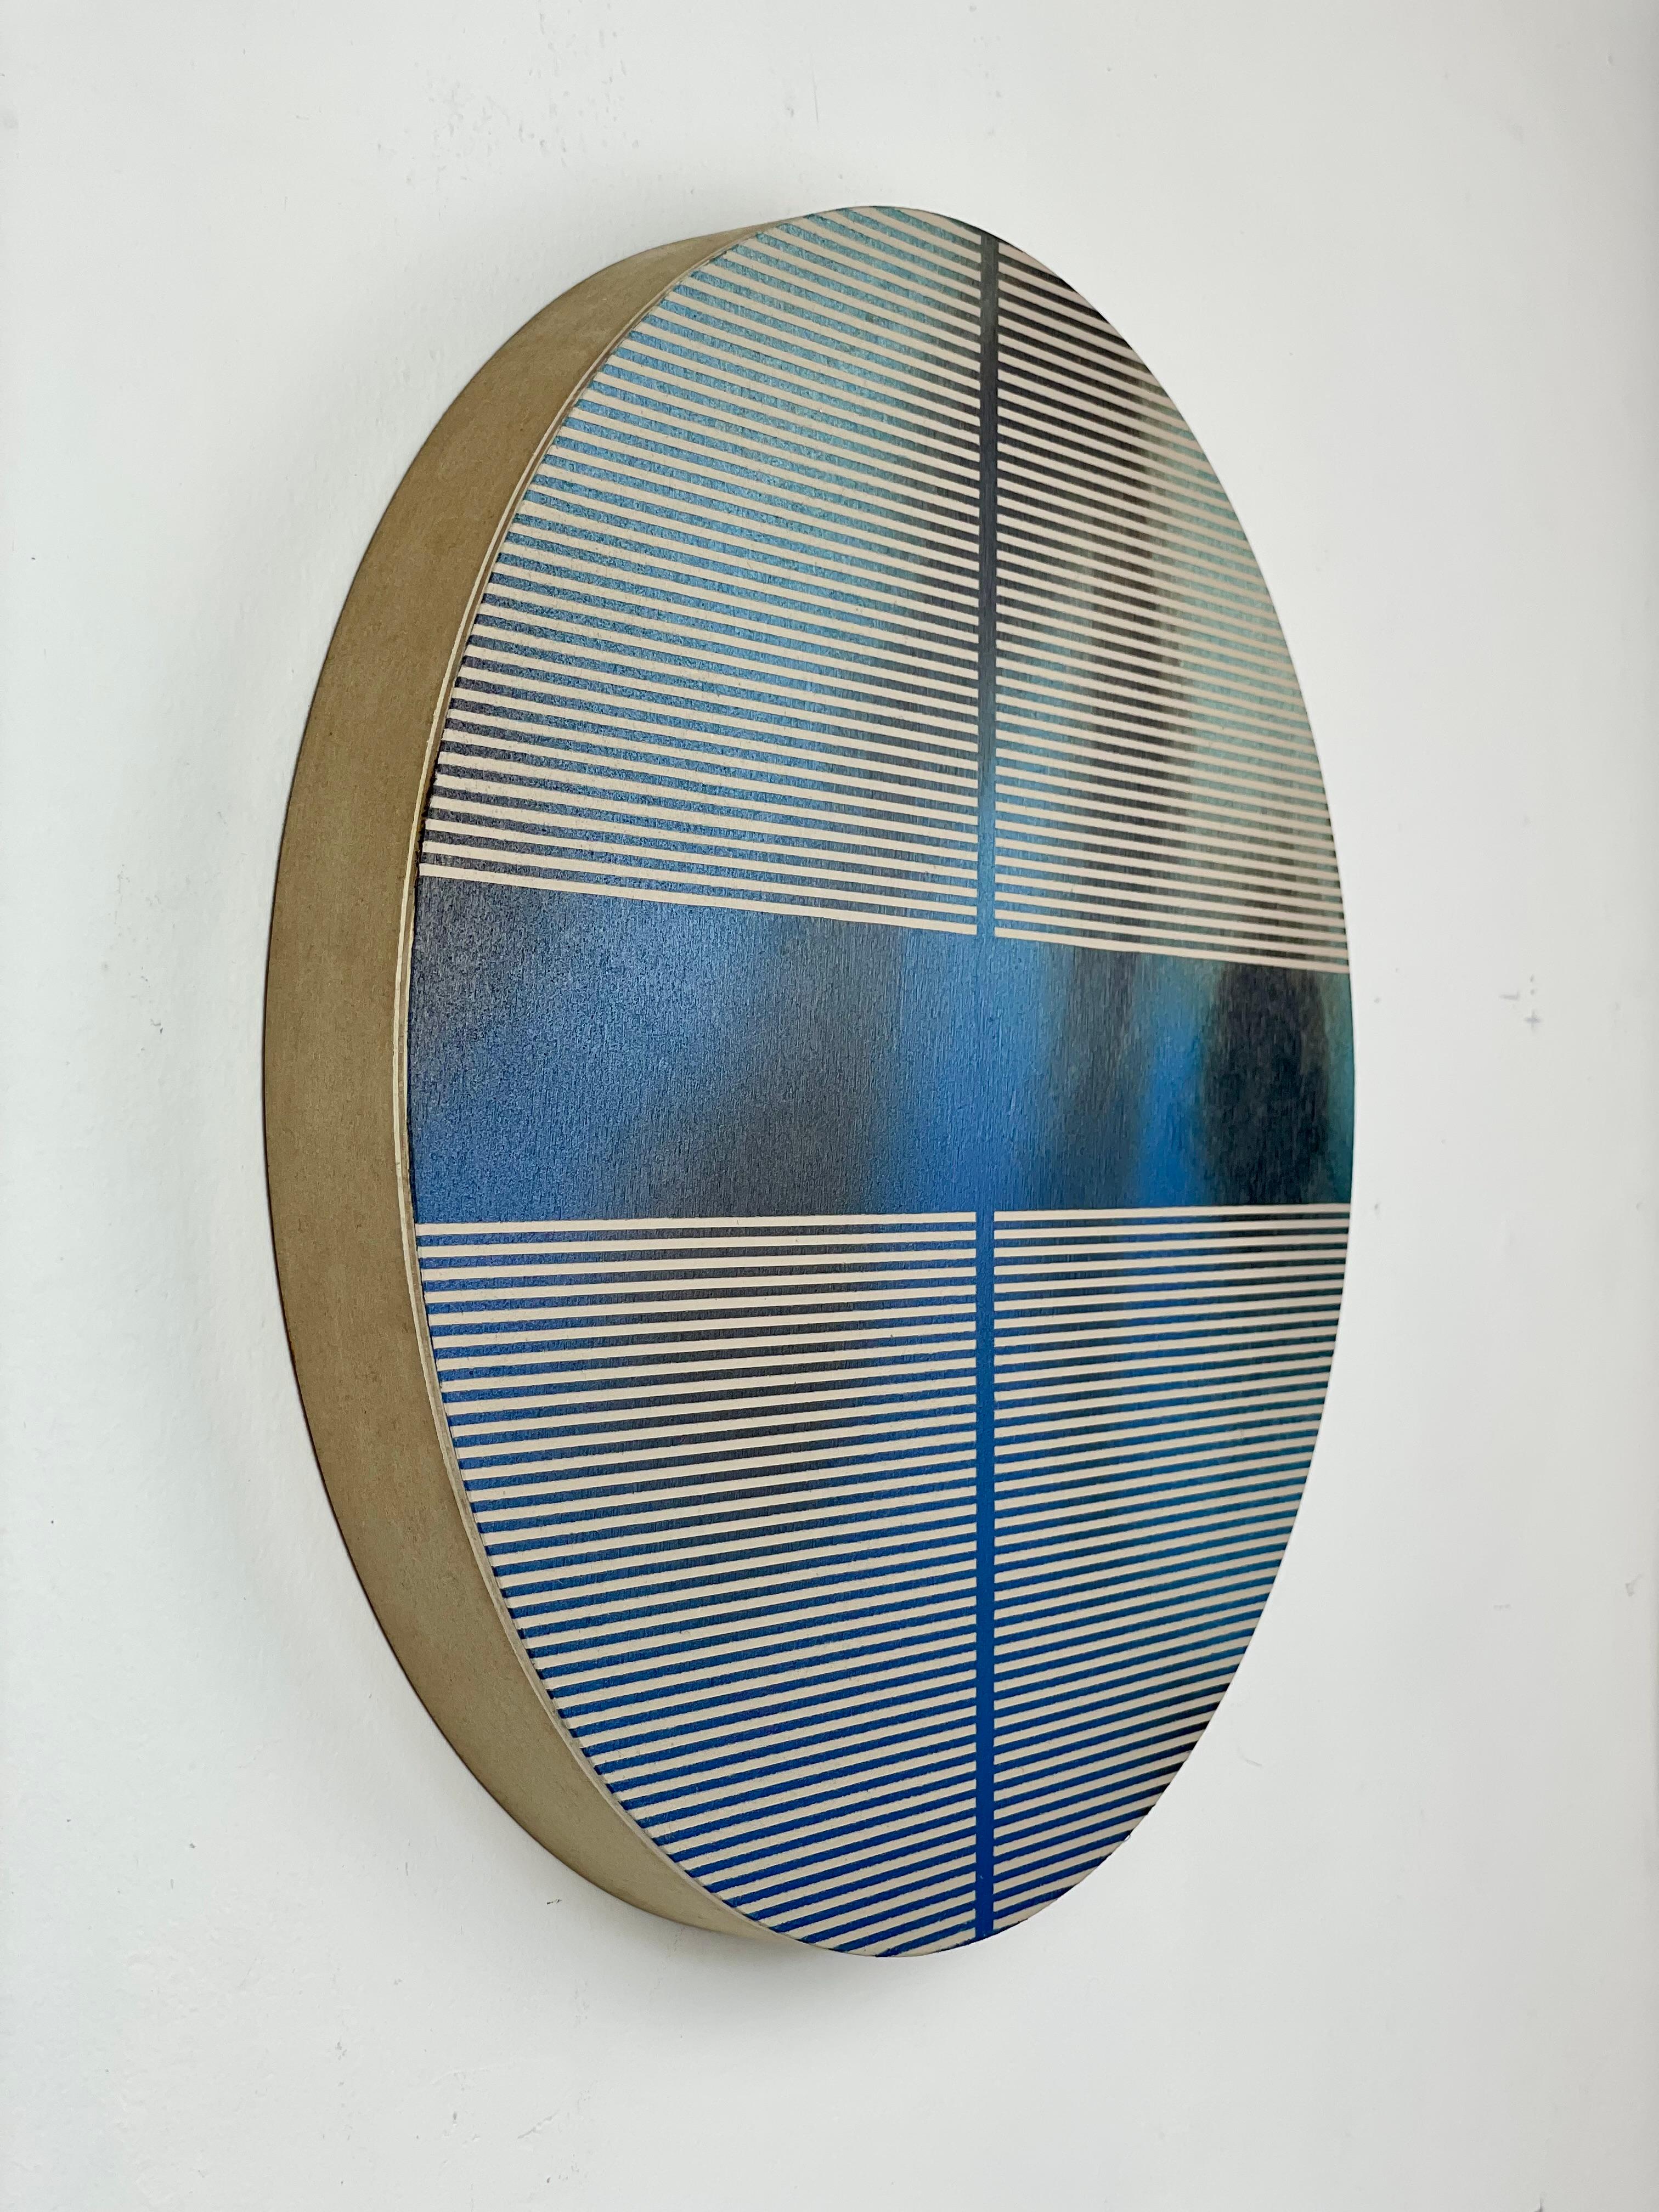 Méditerranean sea blue pill (Minimalistisches Raster Rundgemälde auf Holz Dopamin) (Geometrische Abstraktion), Painting, von Melisa Taylor Metzger